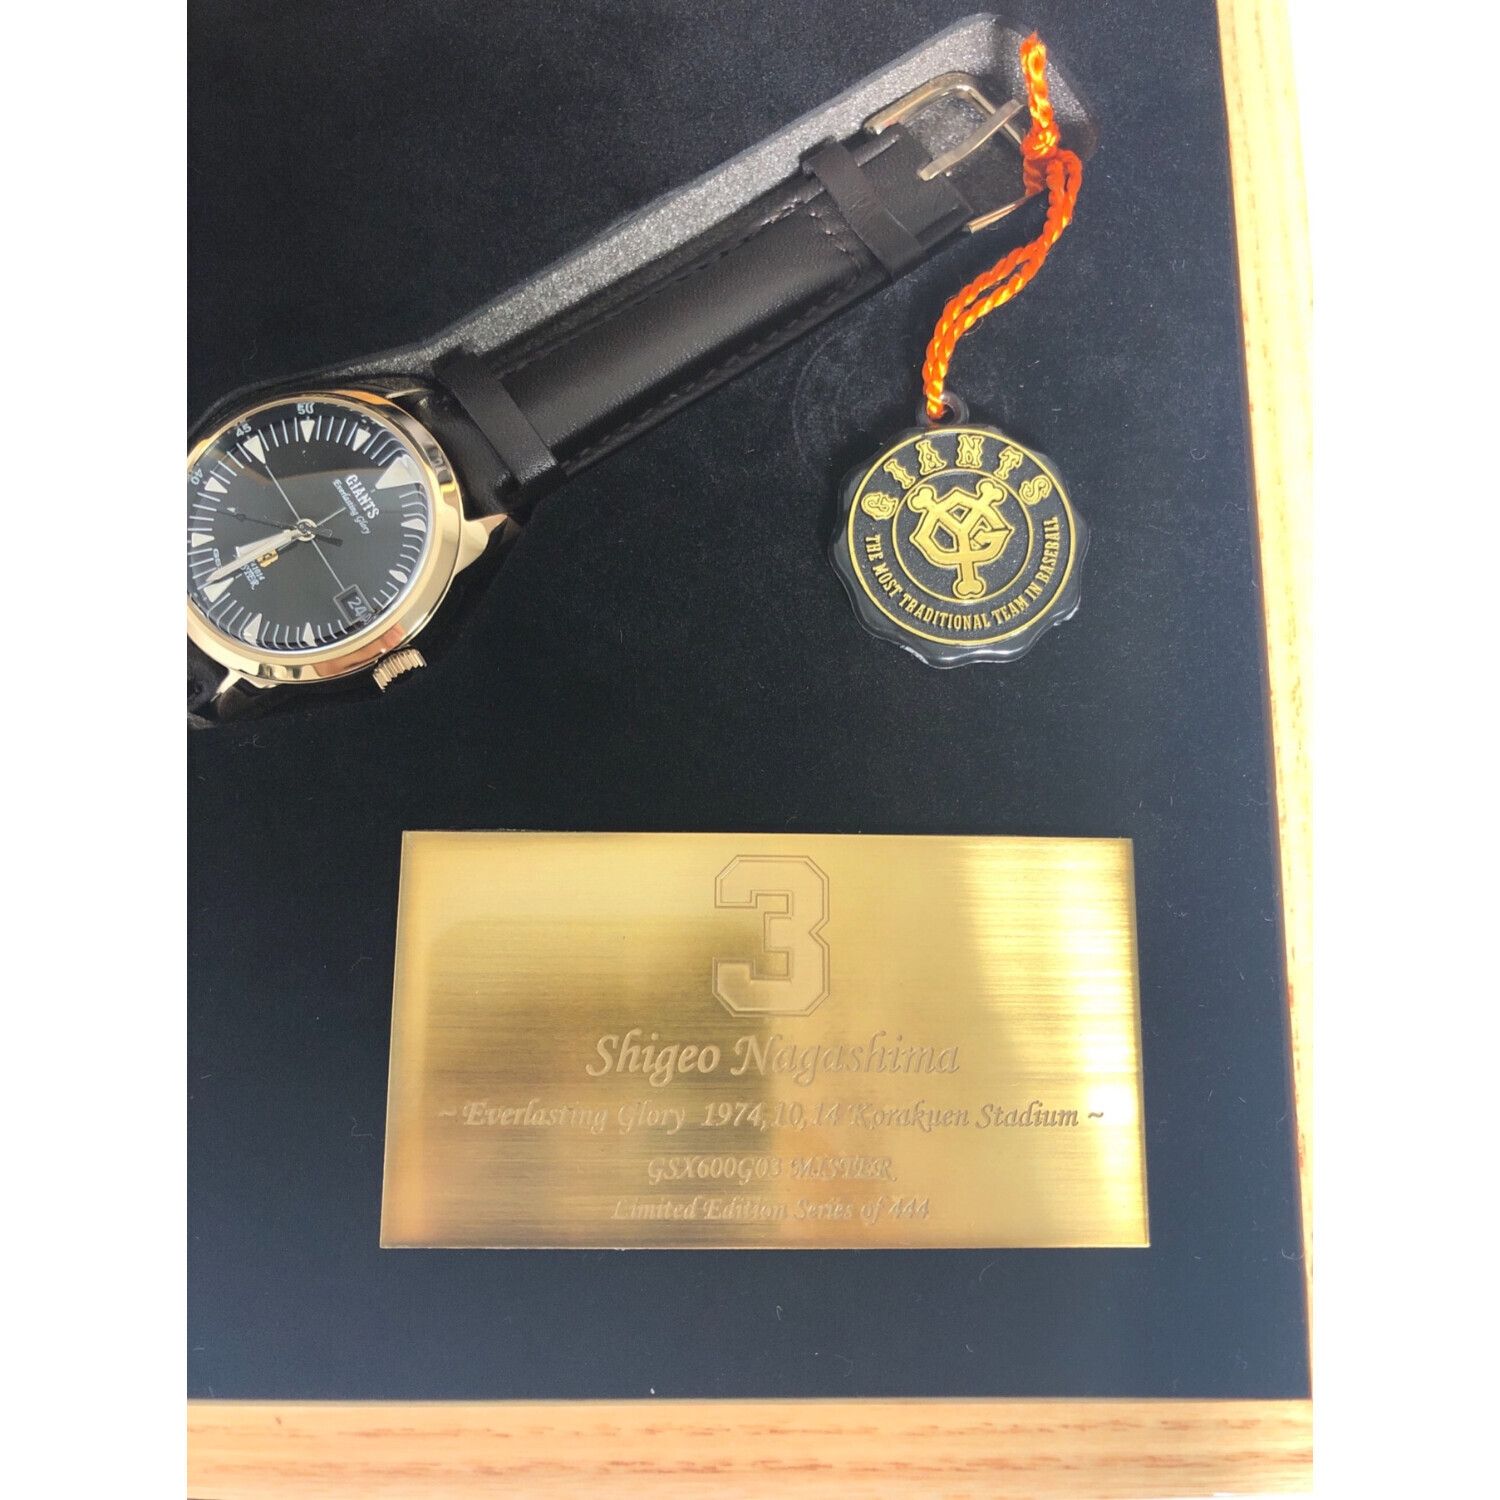 GSX (ジーエスエックス) 腕時計 ブラック 432/444 ミスターGIANTS長嶋